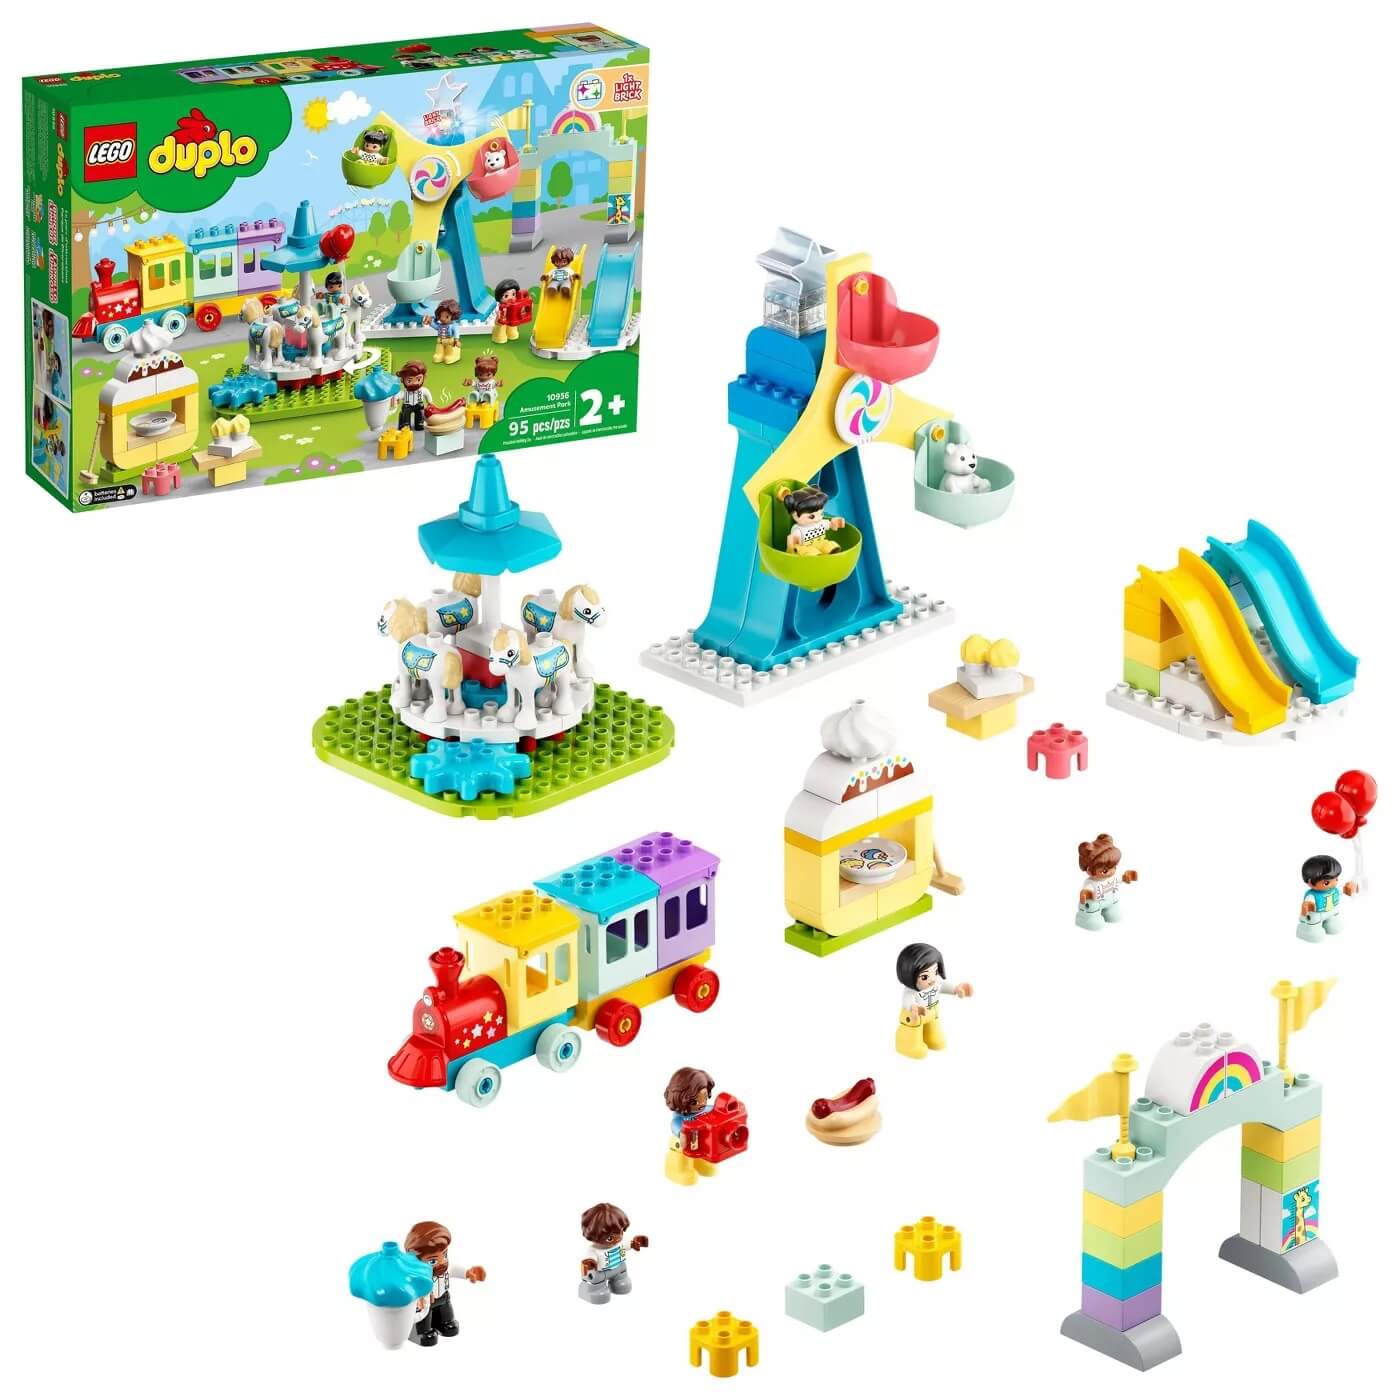 LEGO DUPLO Town Amusement Park 95 Piece Building Set (10956)